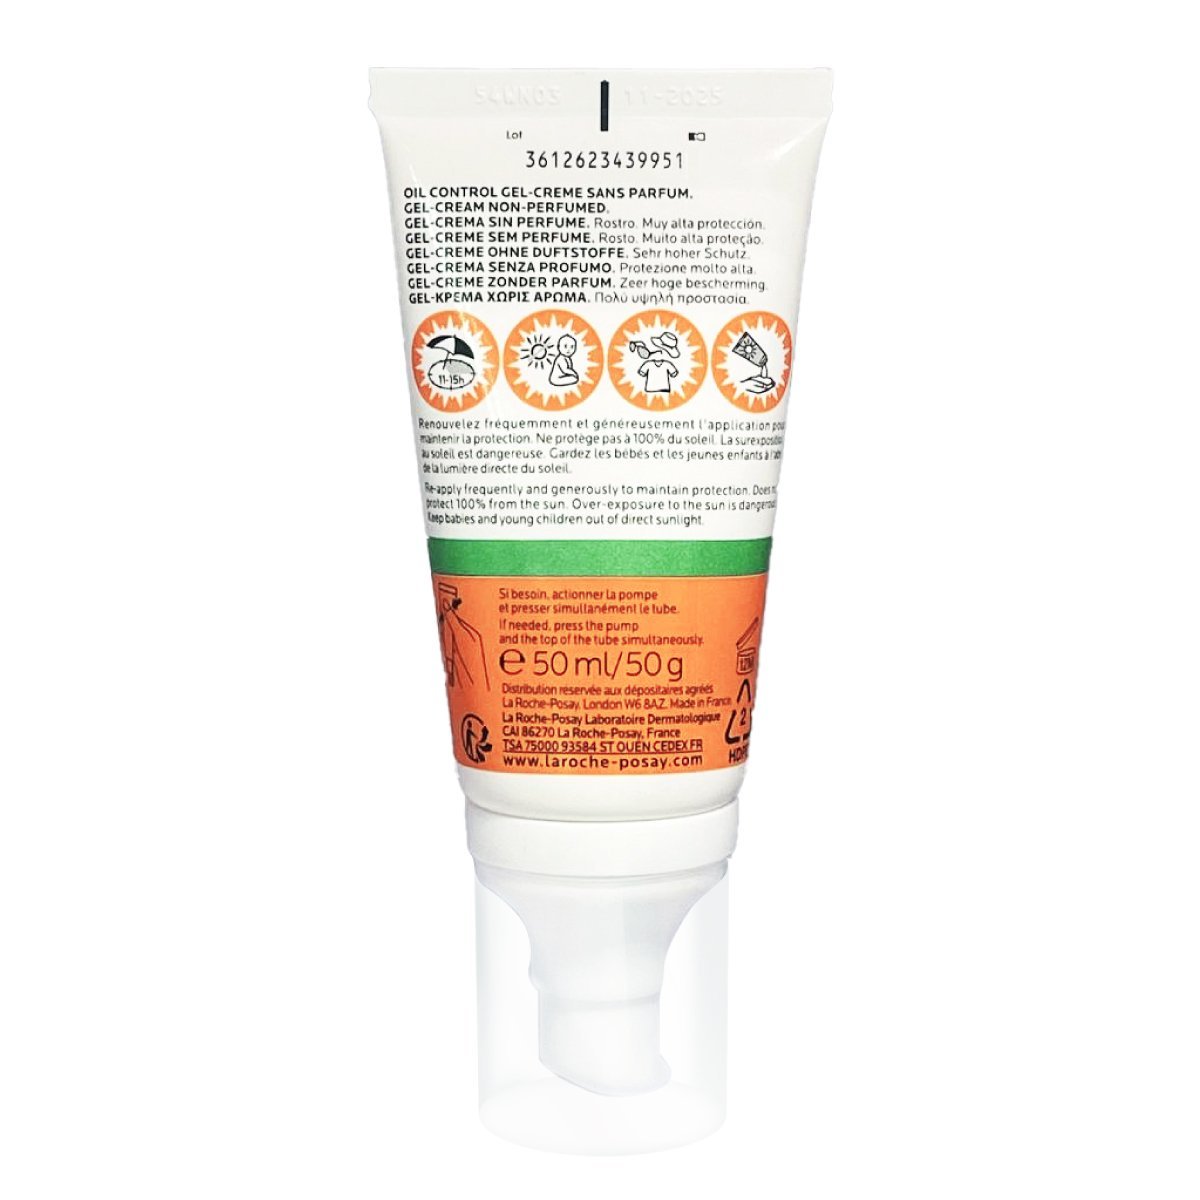 anthelios-uvmune400-oil-control-gel-cream